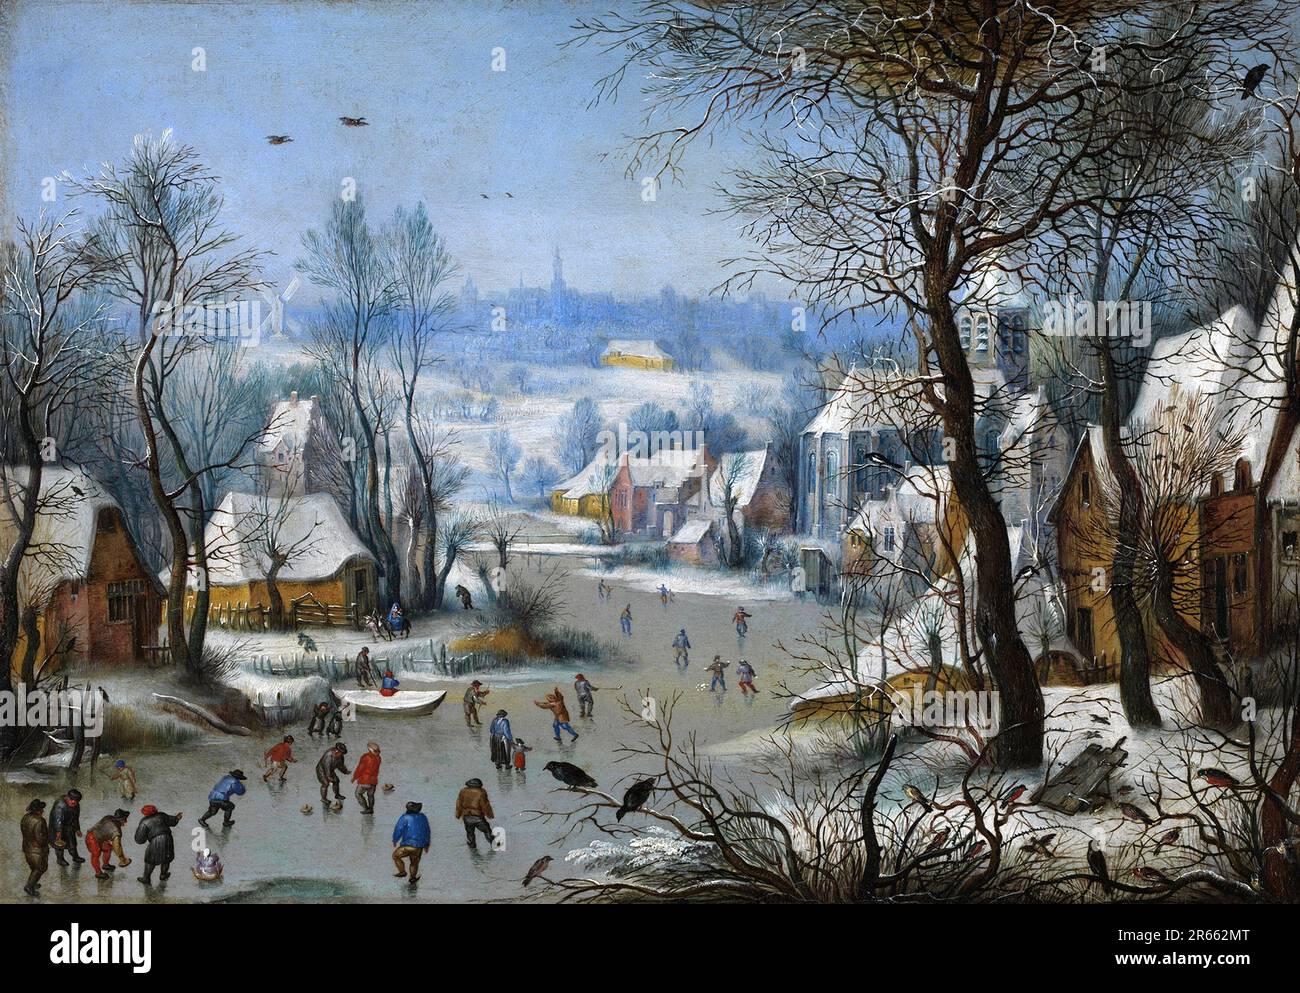 Winterlandschaft mit Skatern und einer Vogelfalle, gemalt vom niederländischen Renaissance-Maler Pieter Breughel der Ältere im Jahr 1565. Breughel war der wichtigste Maler der niederländischen und flämischen Renaissance. Seine Themenauswahl war einflussreich, er lehnte Porträts und religiöse Szenen zugunsten von lokalen und Bauernszenen ab. Stockfoto